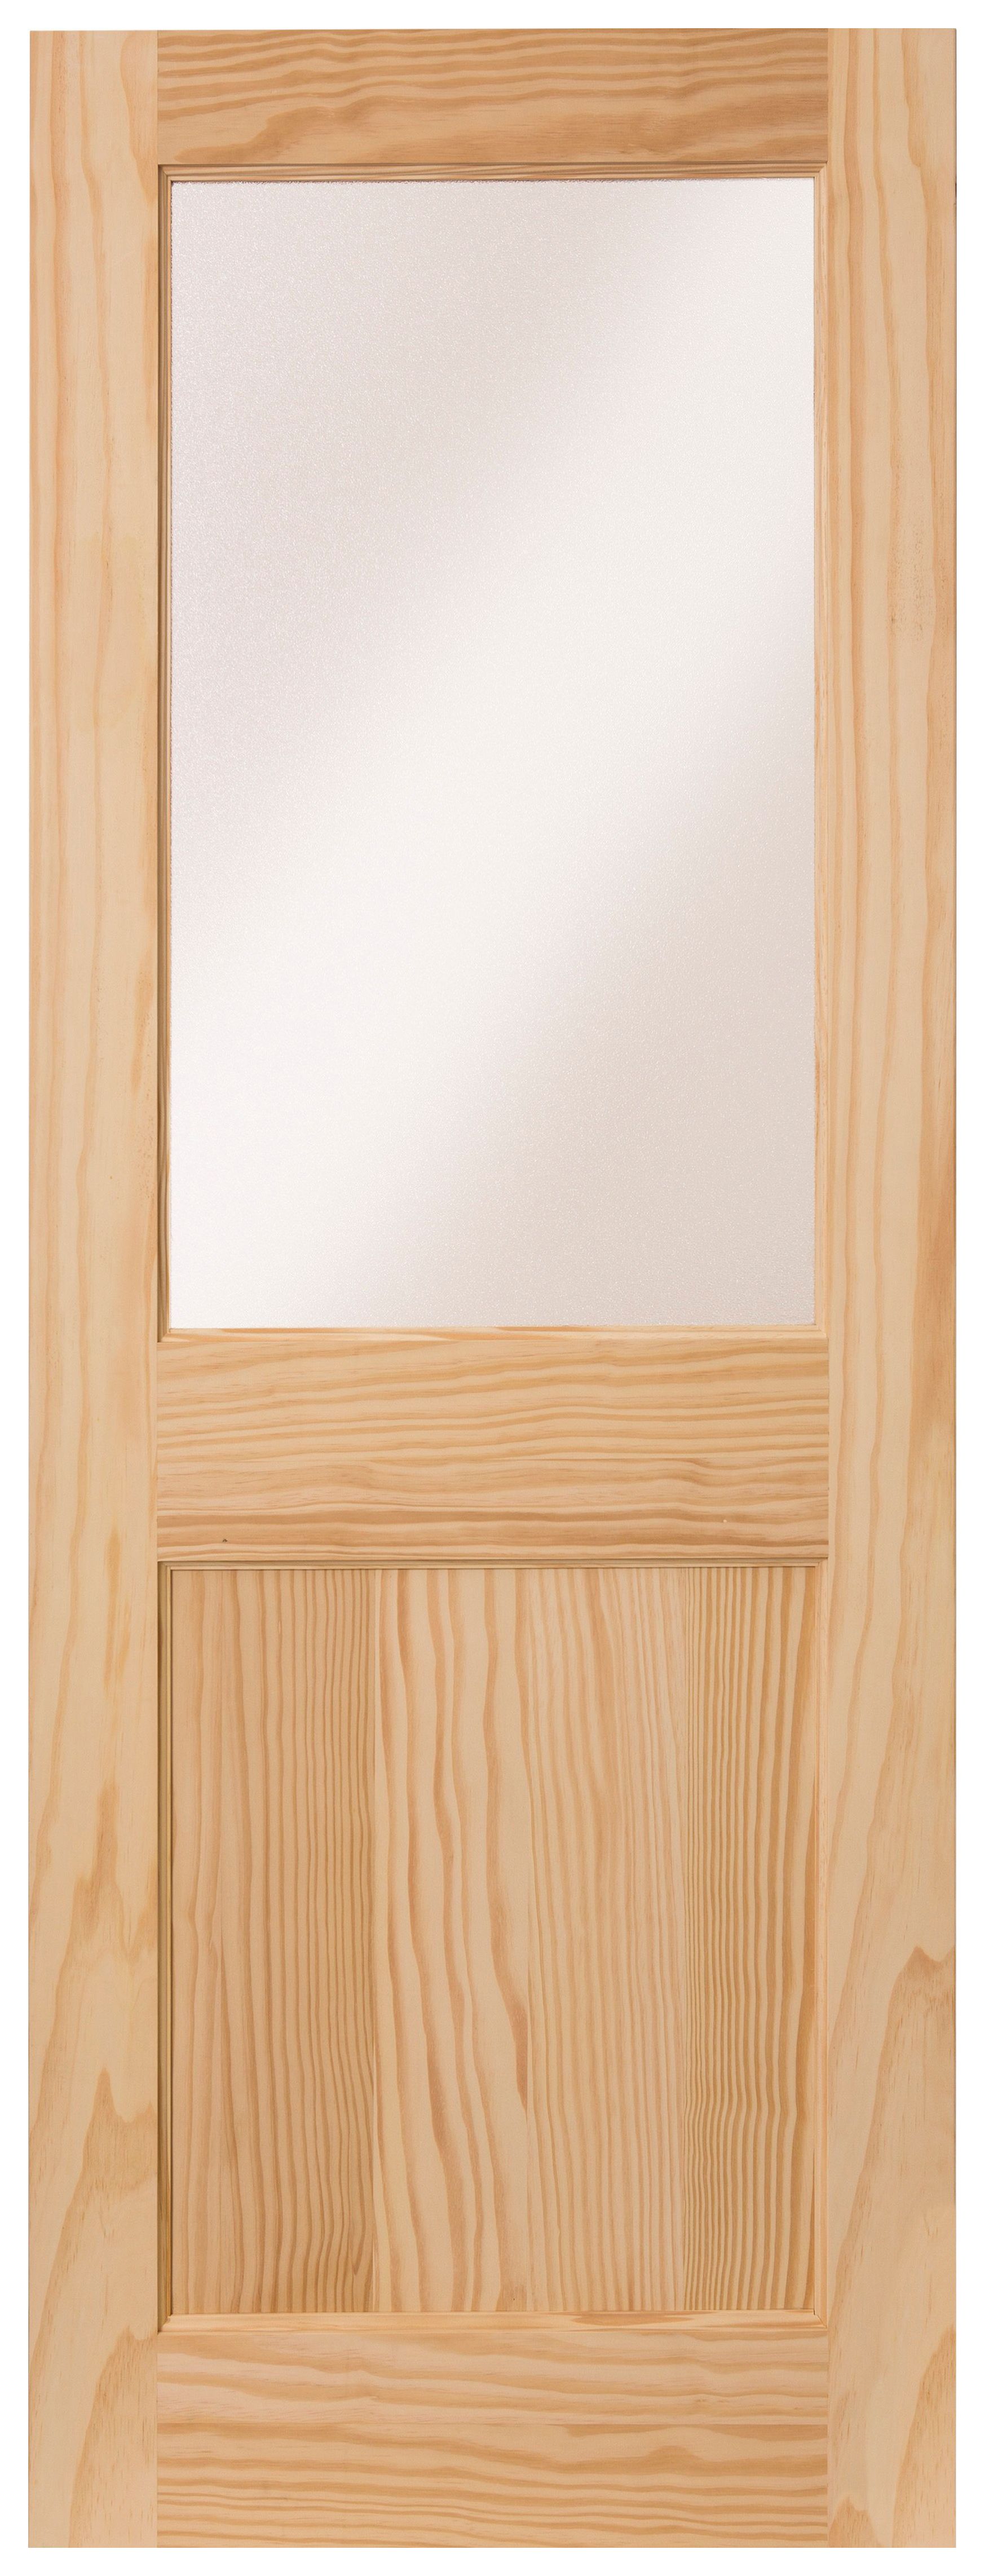 Image of Wickes Tamar External 1 Panel Glazed Pine Door - 2032 x 813mm